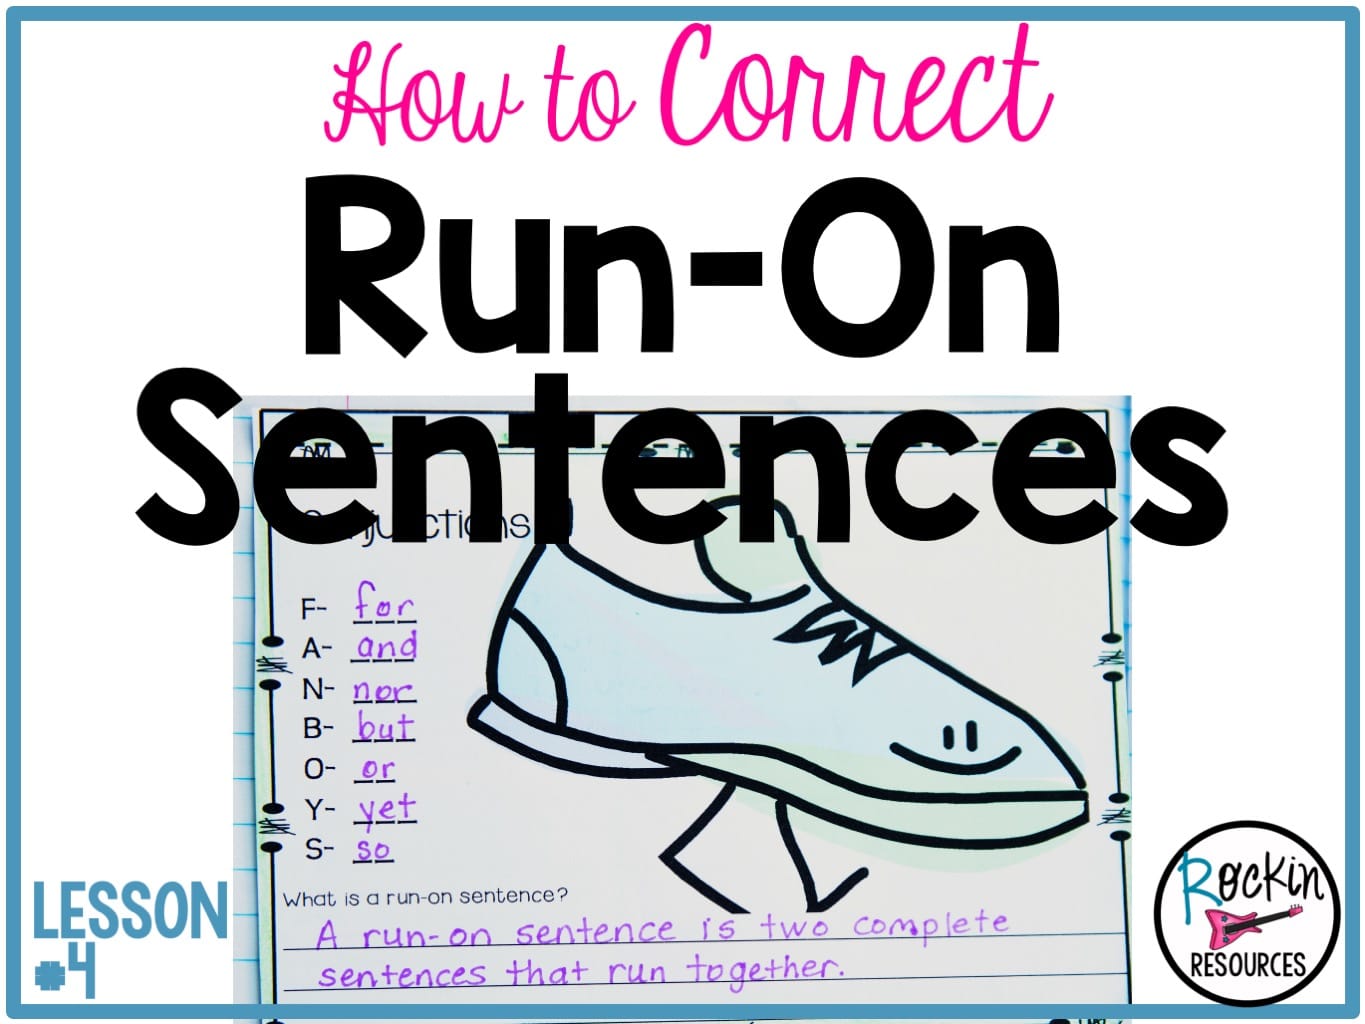 correcting-a-run-on-sentence